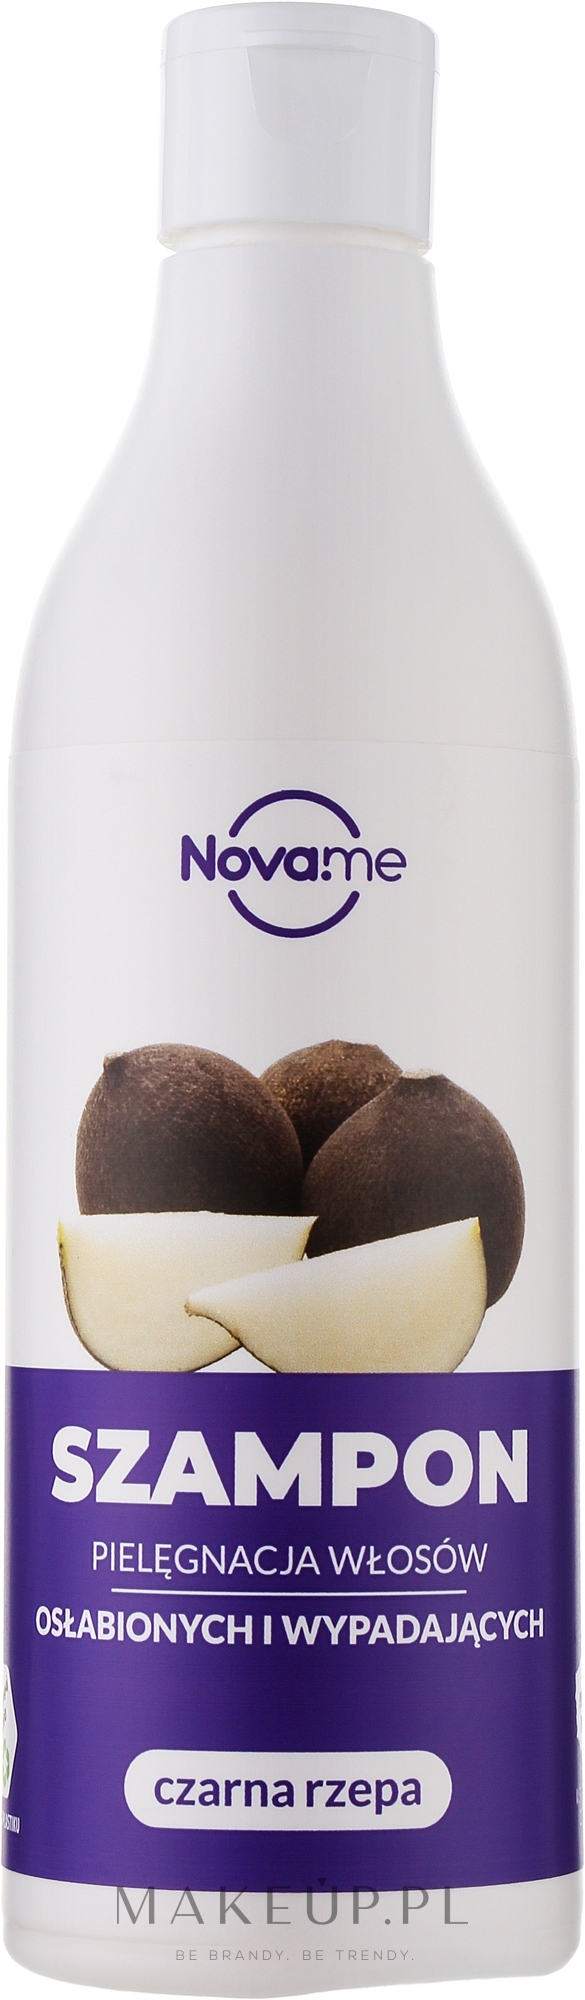 Wzmacniający szampon do włosów osłabionych i wypadających Czarna rzepa - Novame — Zdjęcie 300 ml